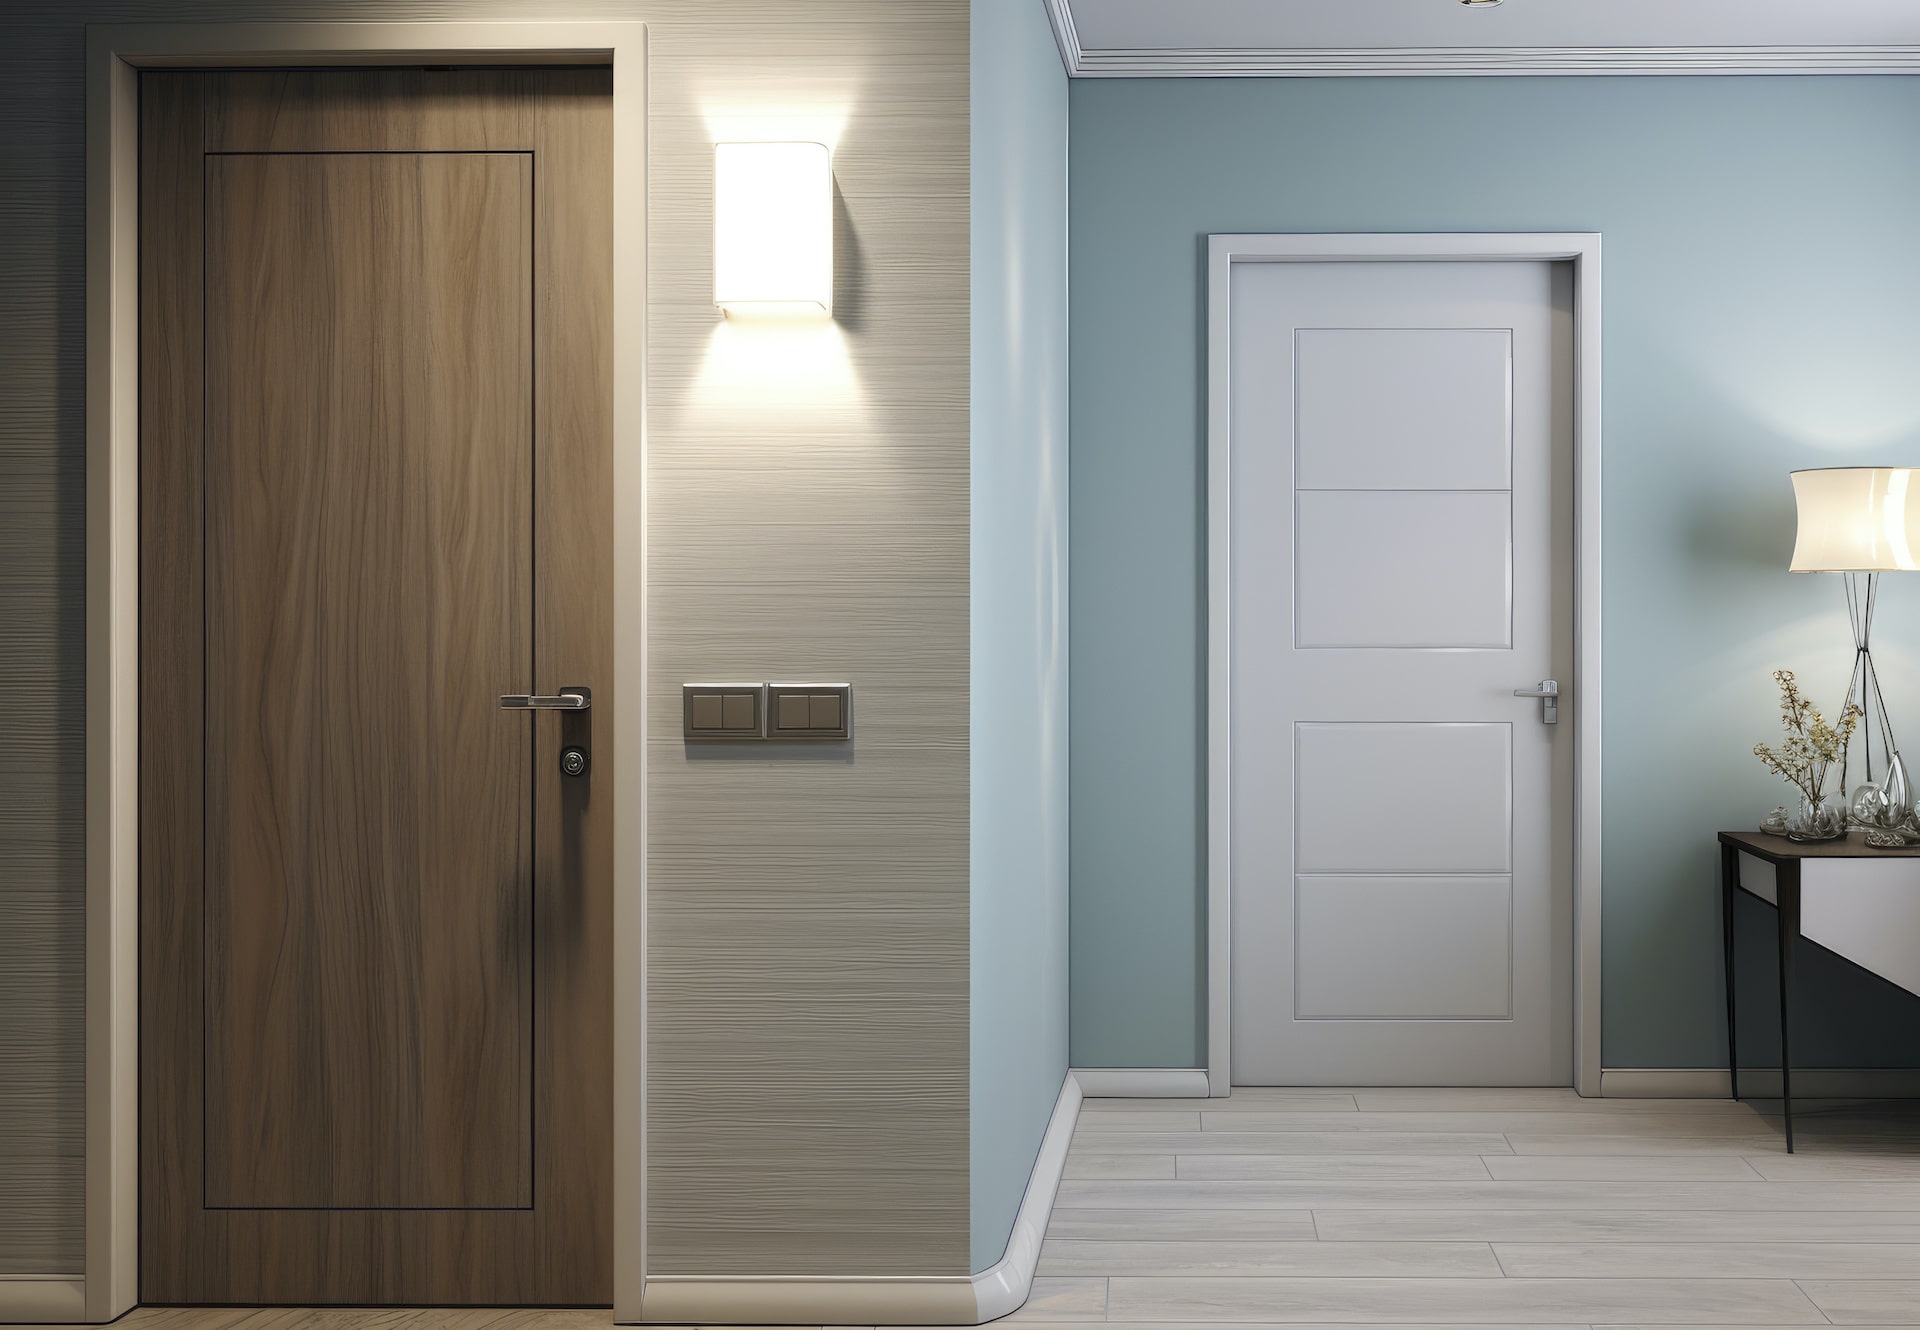 Wooden Door or Melamine Door: How to Make Your Choice?